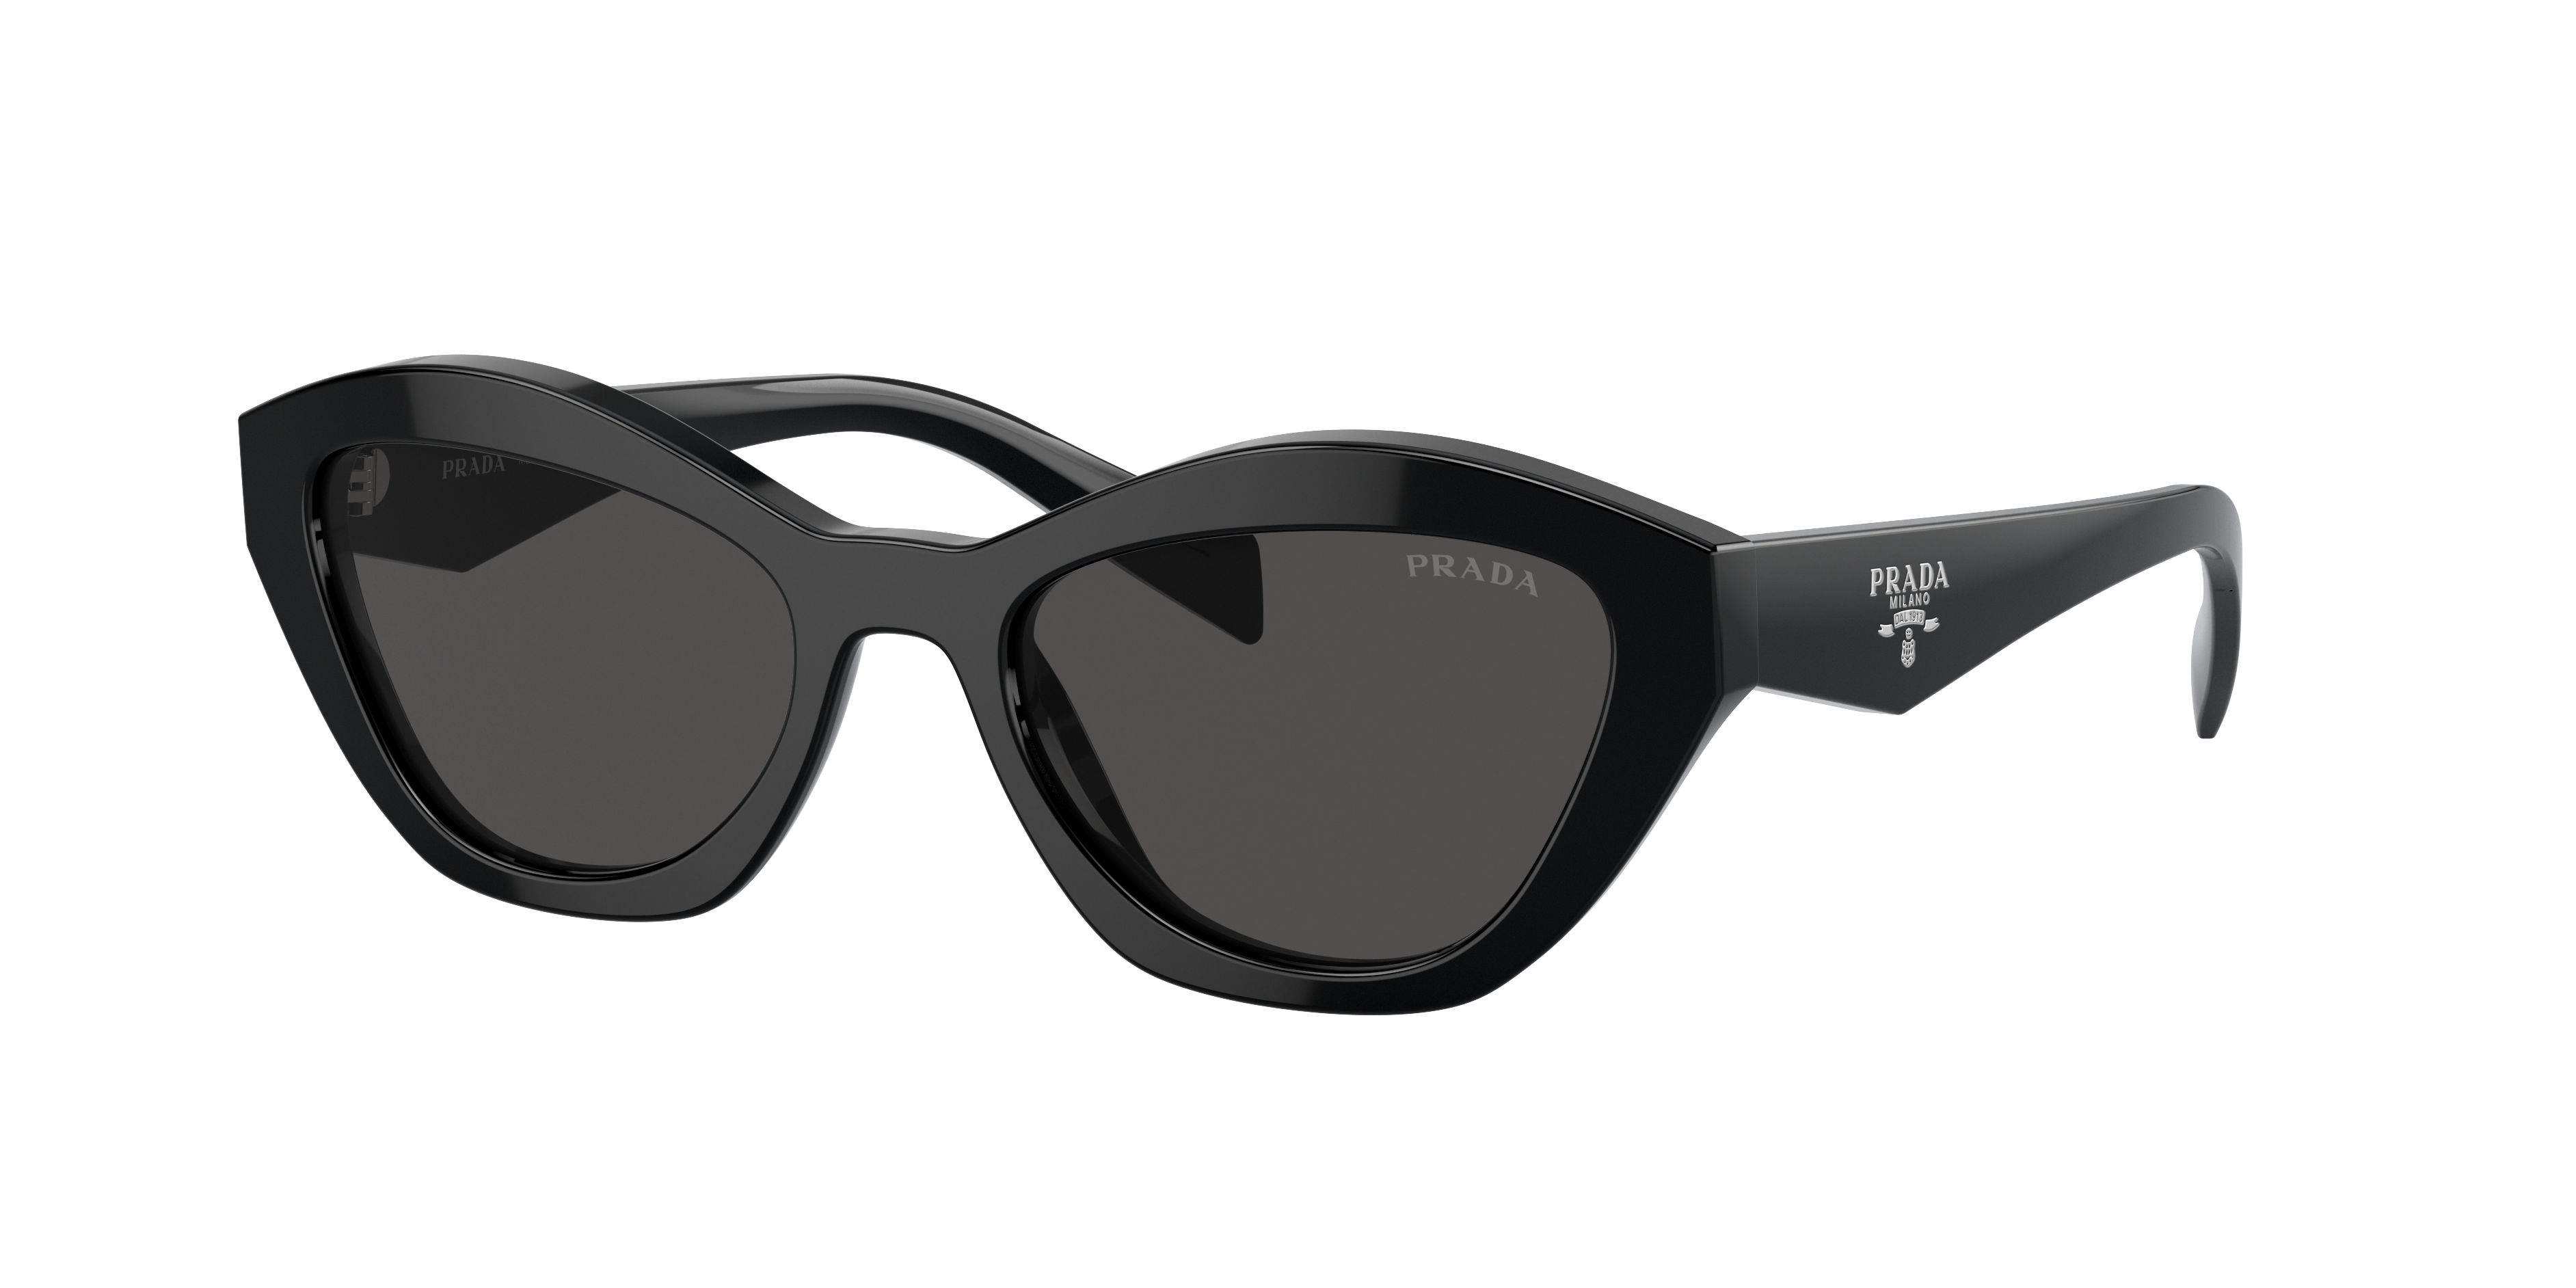 Prada PR A02S 52 Dark Grey & Black Sunglasses | Sunglass Hut USA